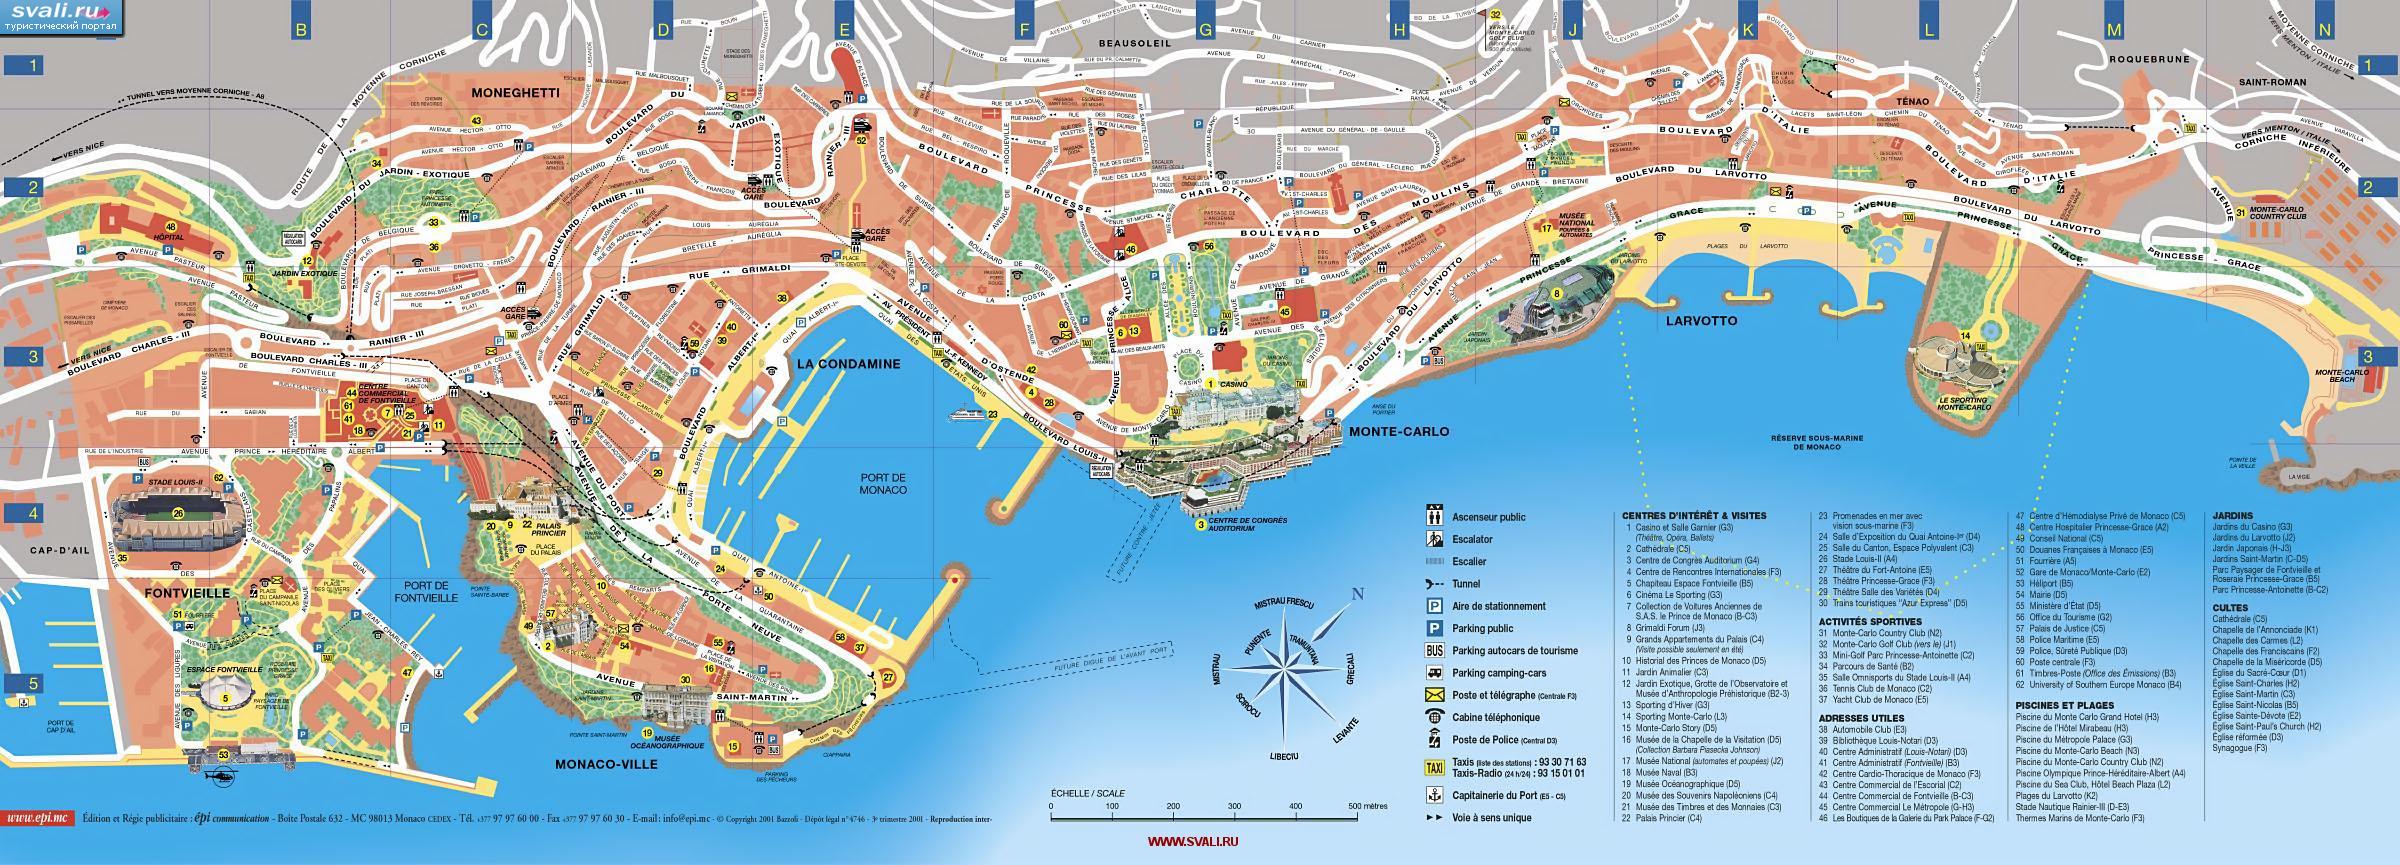 Подробная туристическая карта Монако (фр.)